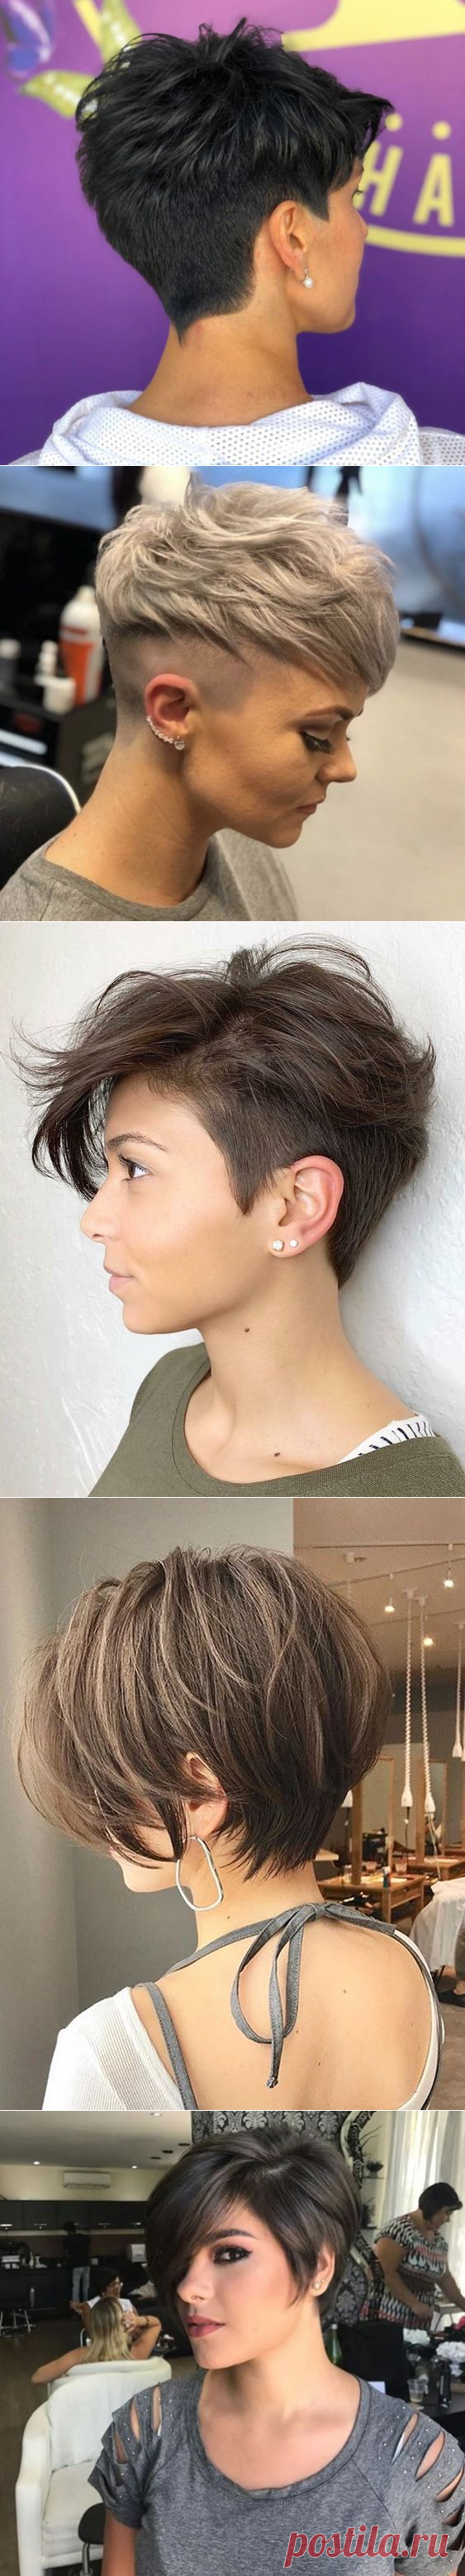 Современная стрижка для коротких волос | Новости моды